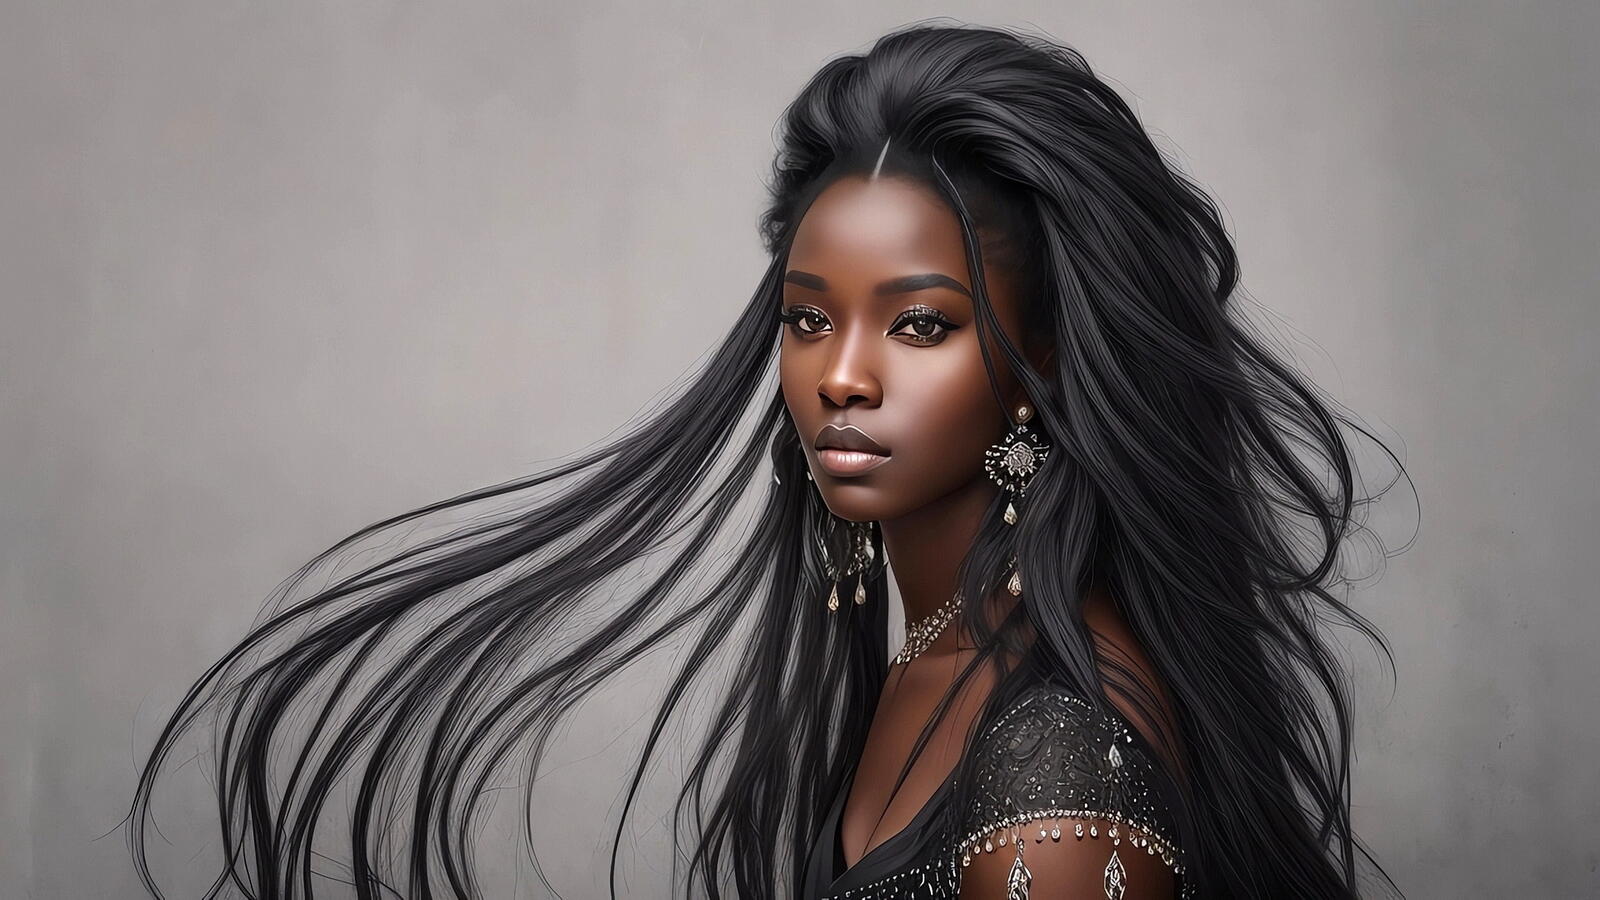 Бесплатное фото Портрет чернокожей девушки с длинными черными волосами на сером фоне